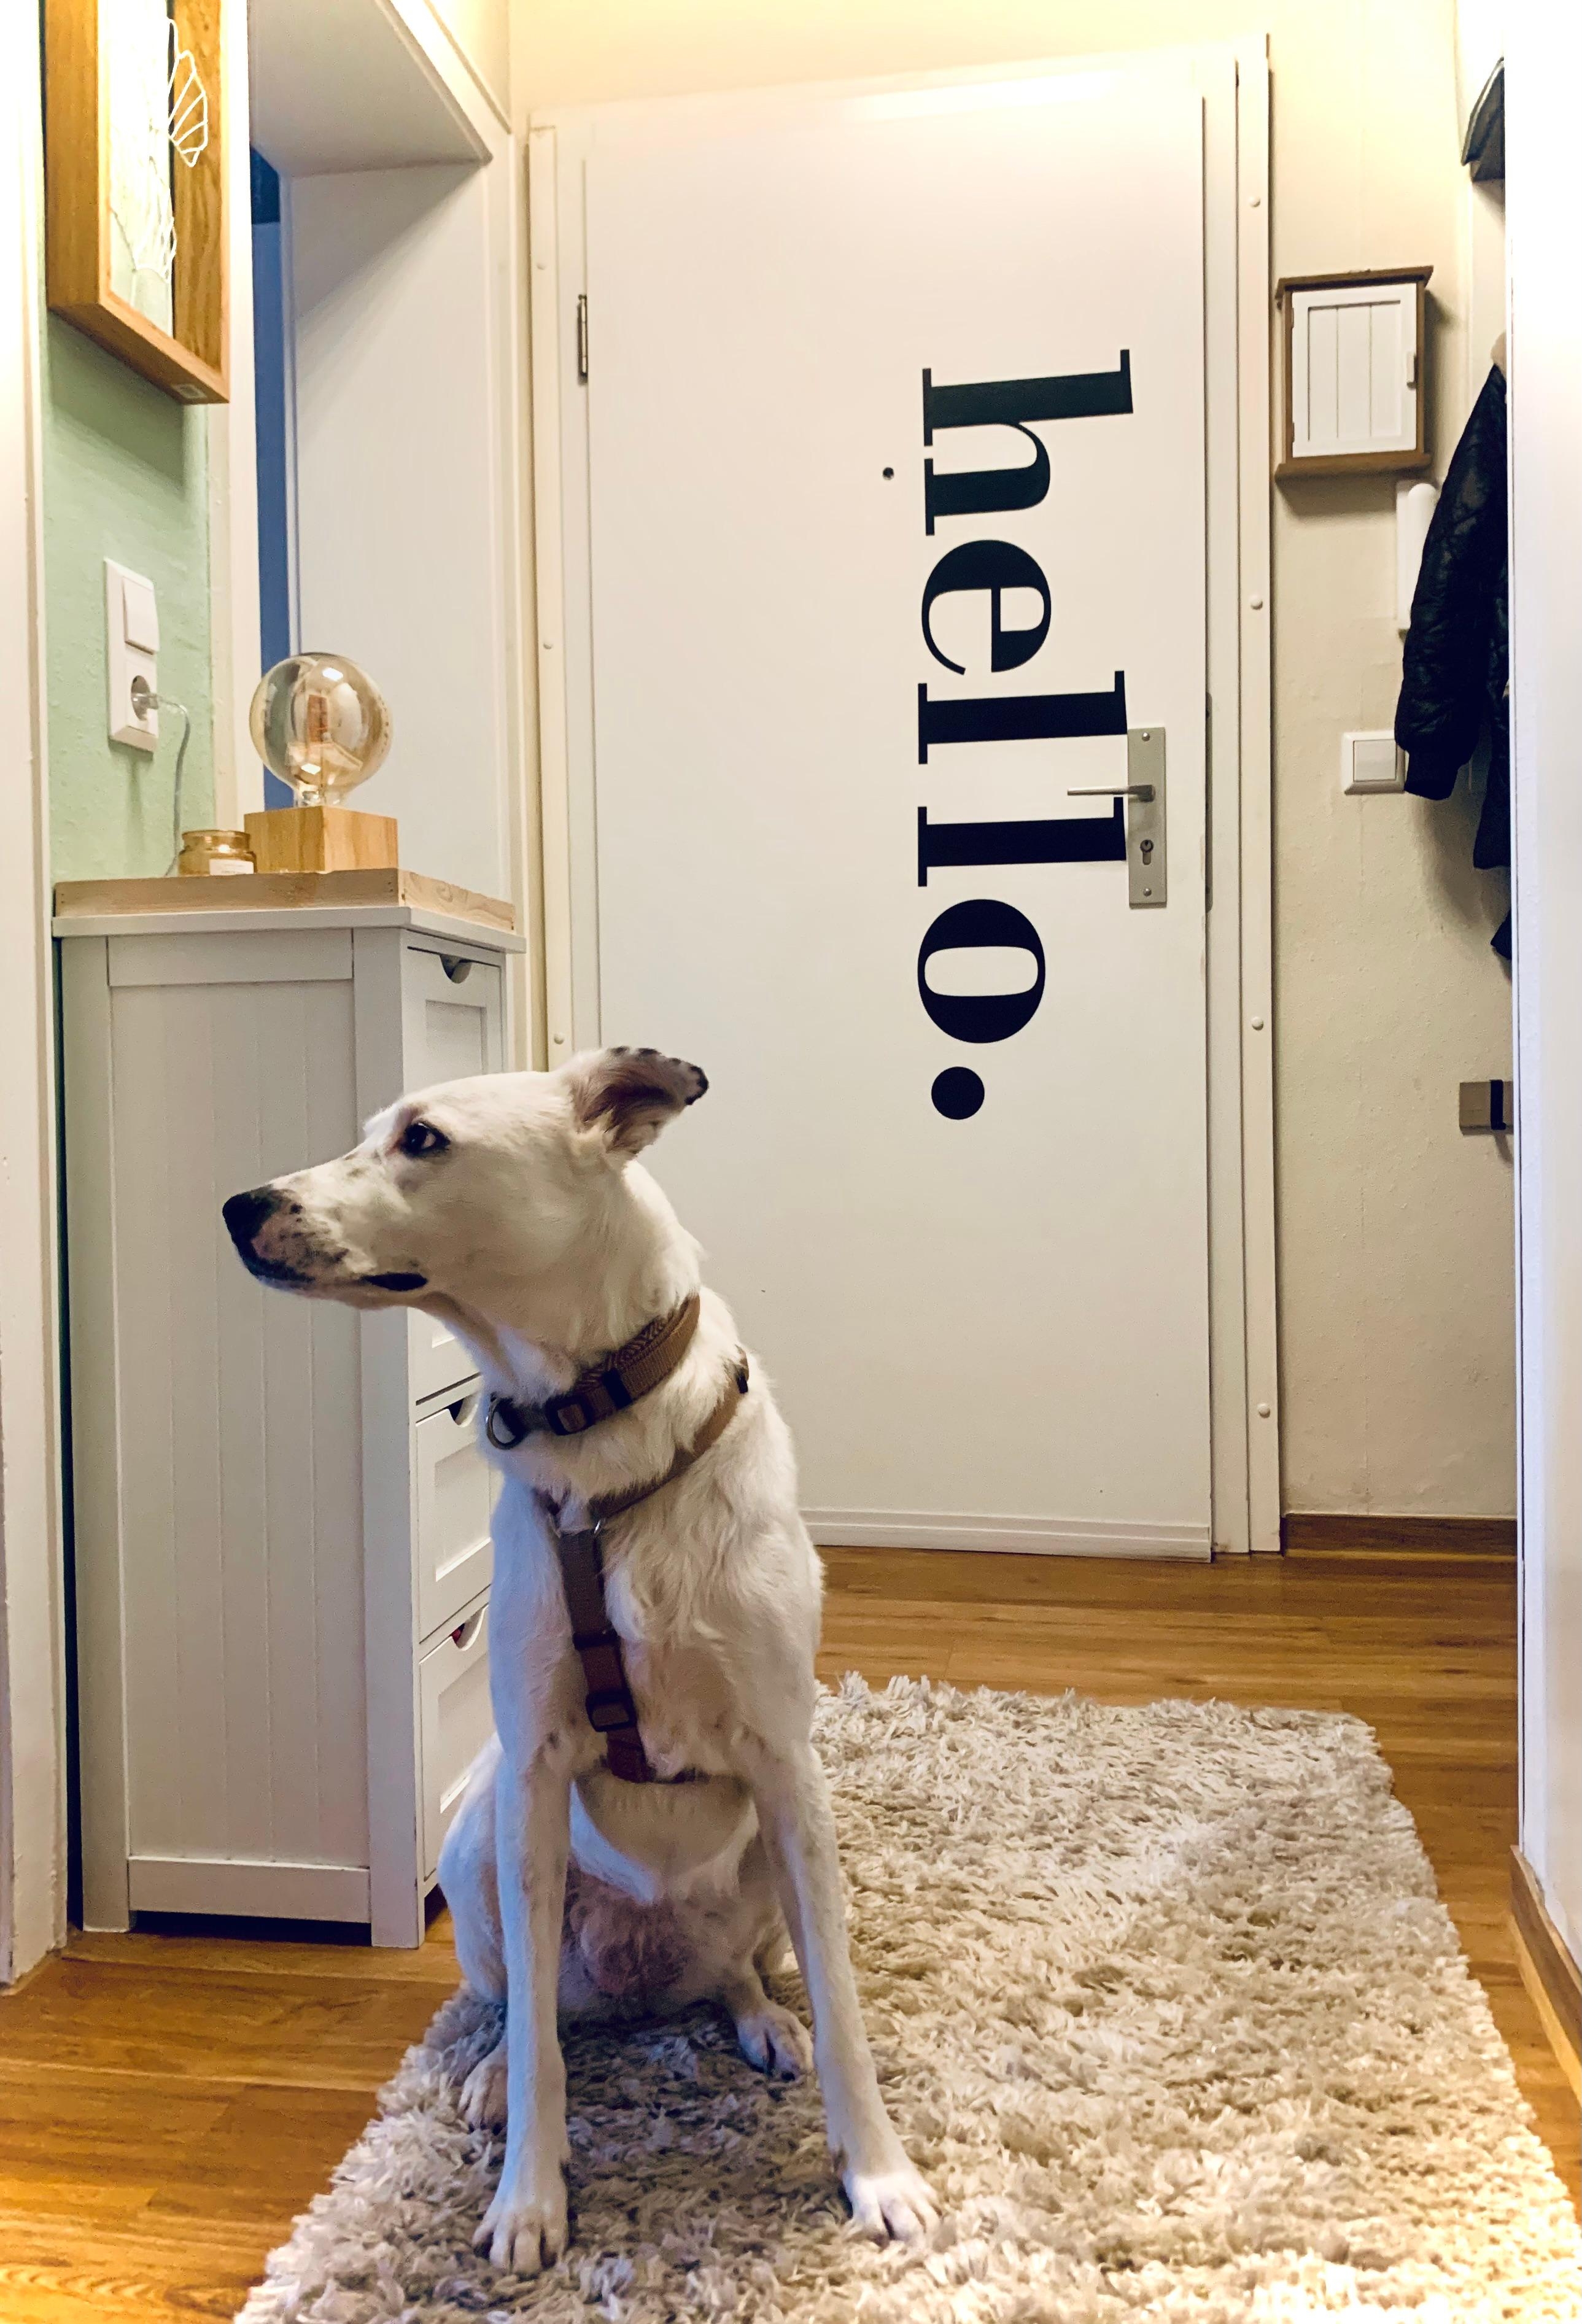              Hello.          👋🏽🖤

#kleinerflur #eingang #mietwohnung #home #dog #teppich #lampe #tür
#schriftzug #helleswohnen